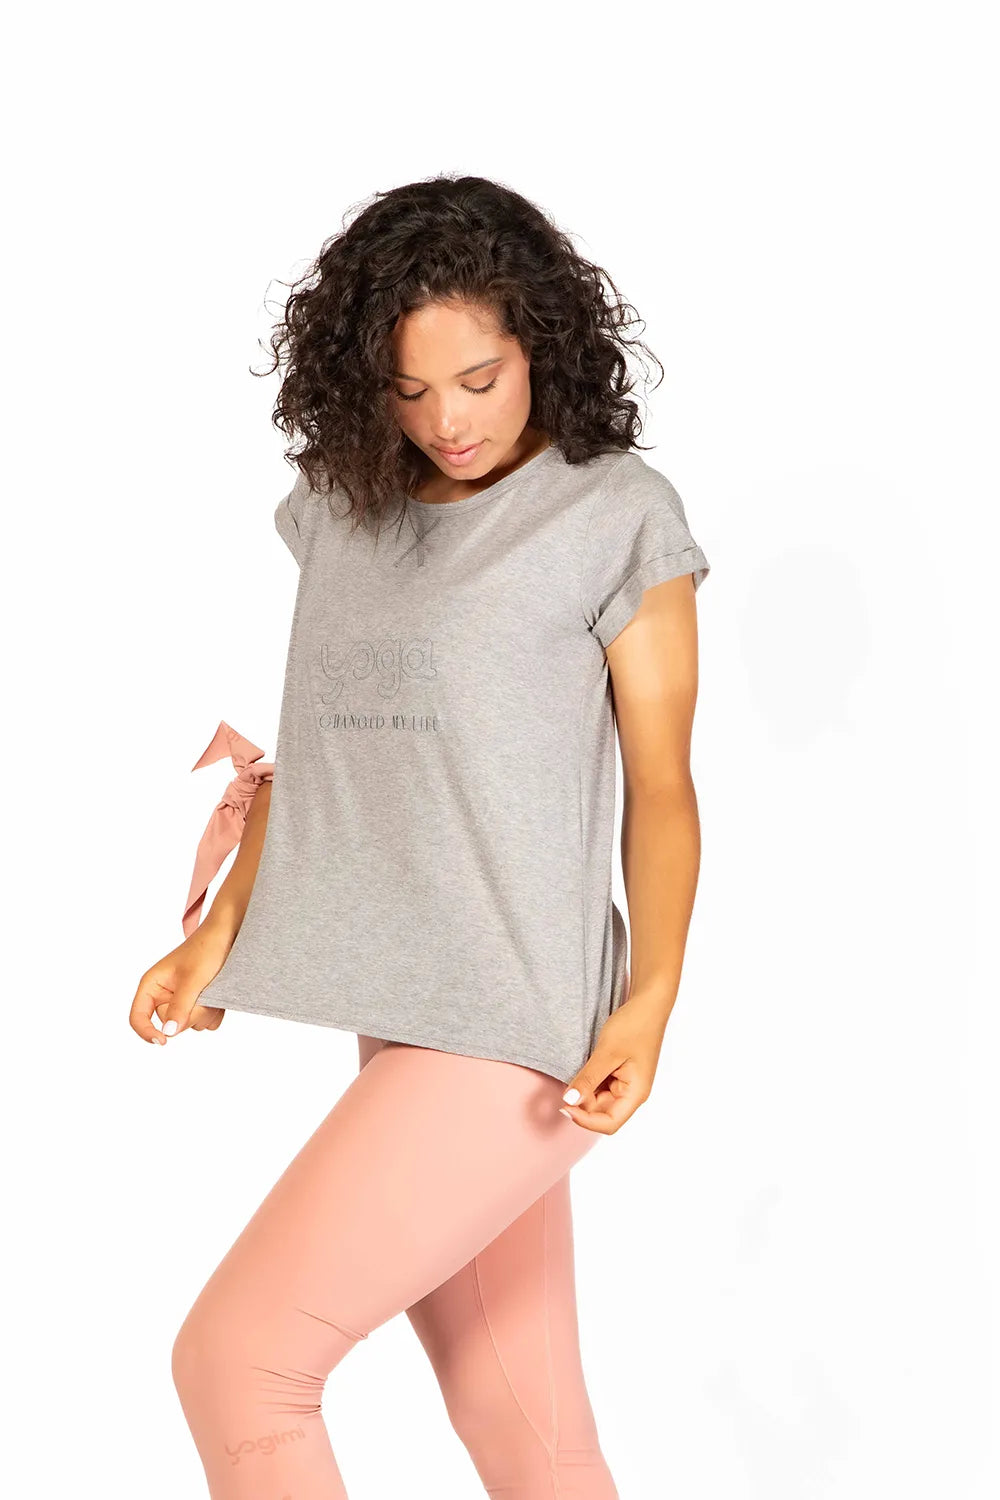 Camiseta Tshirt Yoga Changed de manga corta en color gris de Yogimi. Un básico deal para combinar con cualquier prenda.